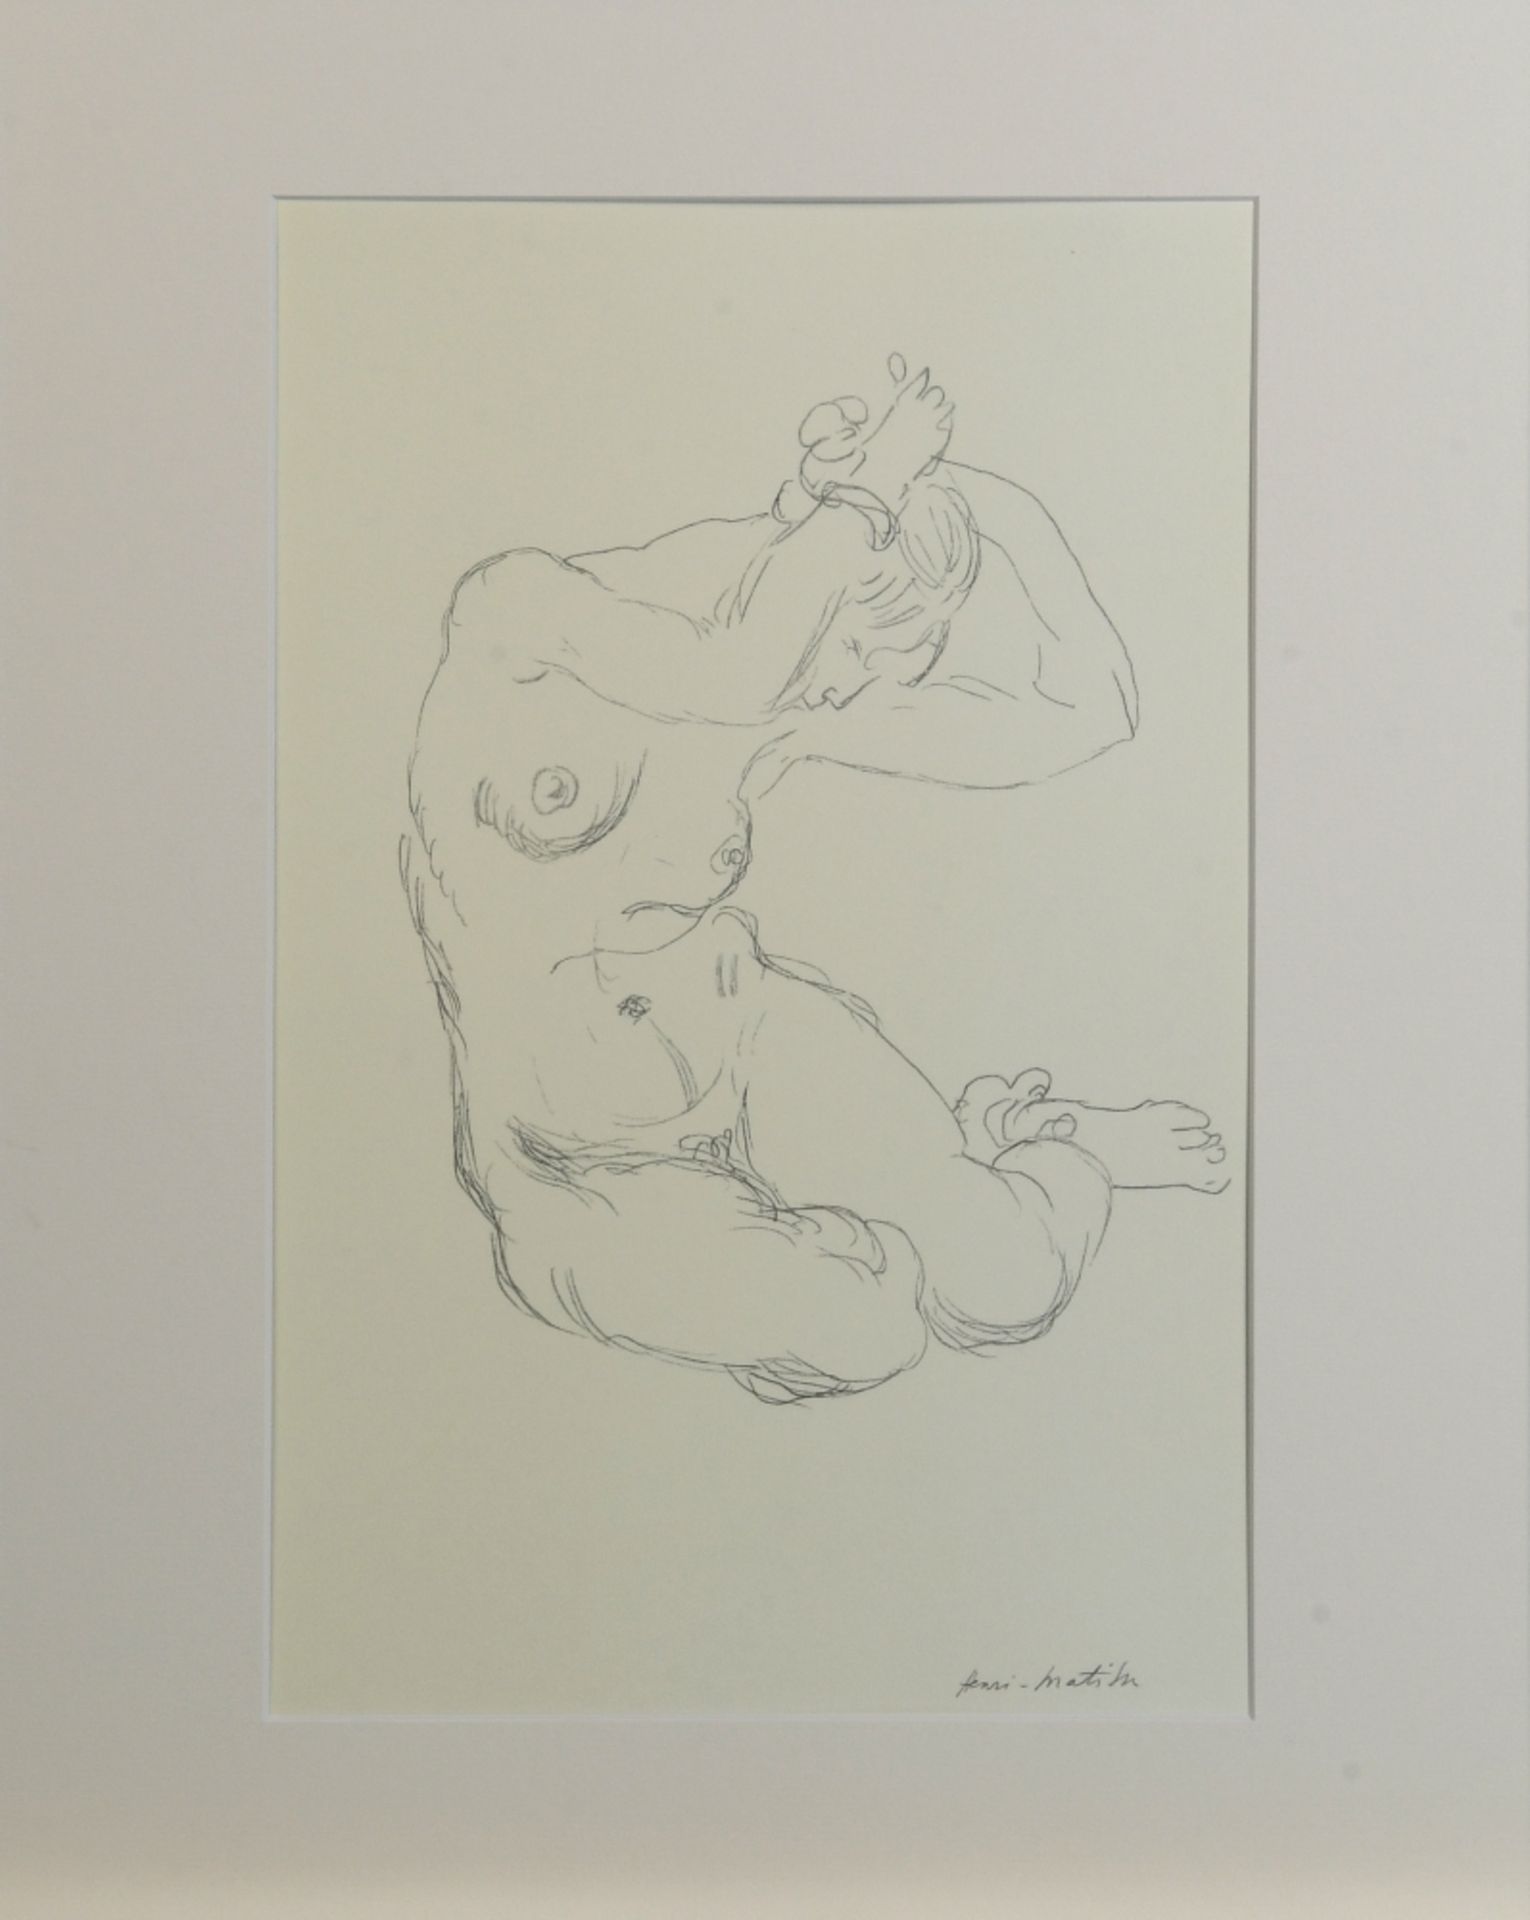 Matisse, Henri, nach, 1869 Cateau/Cambresis - 1954 Nizza